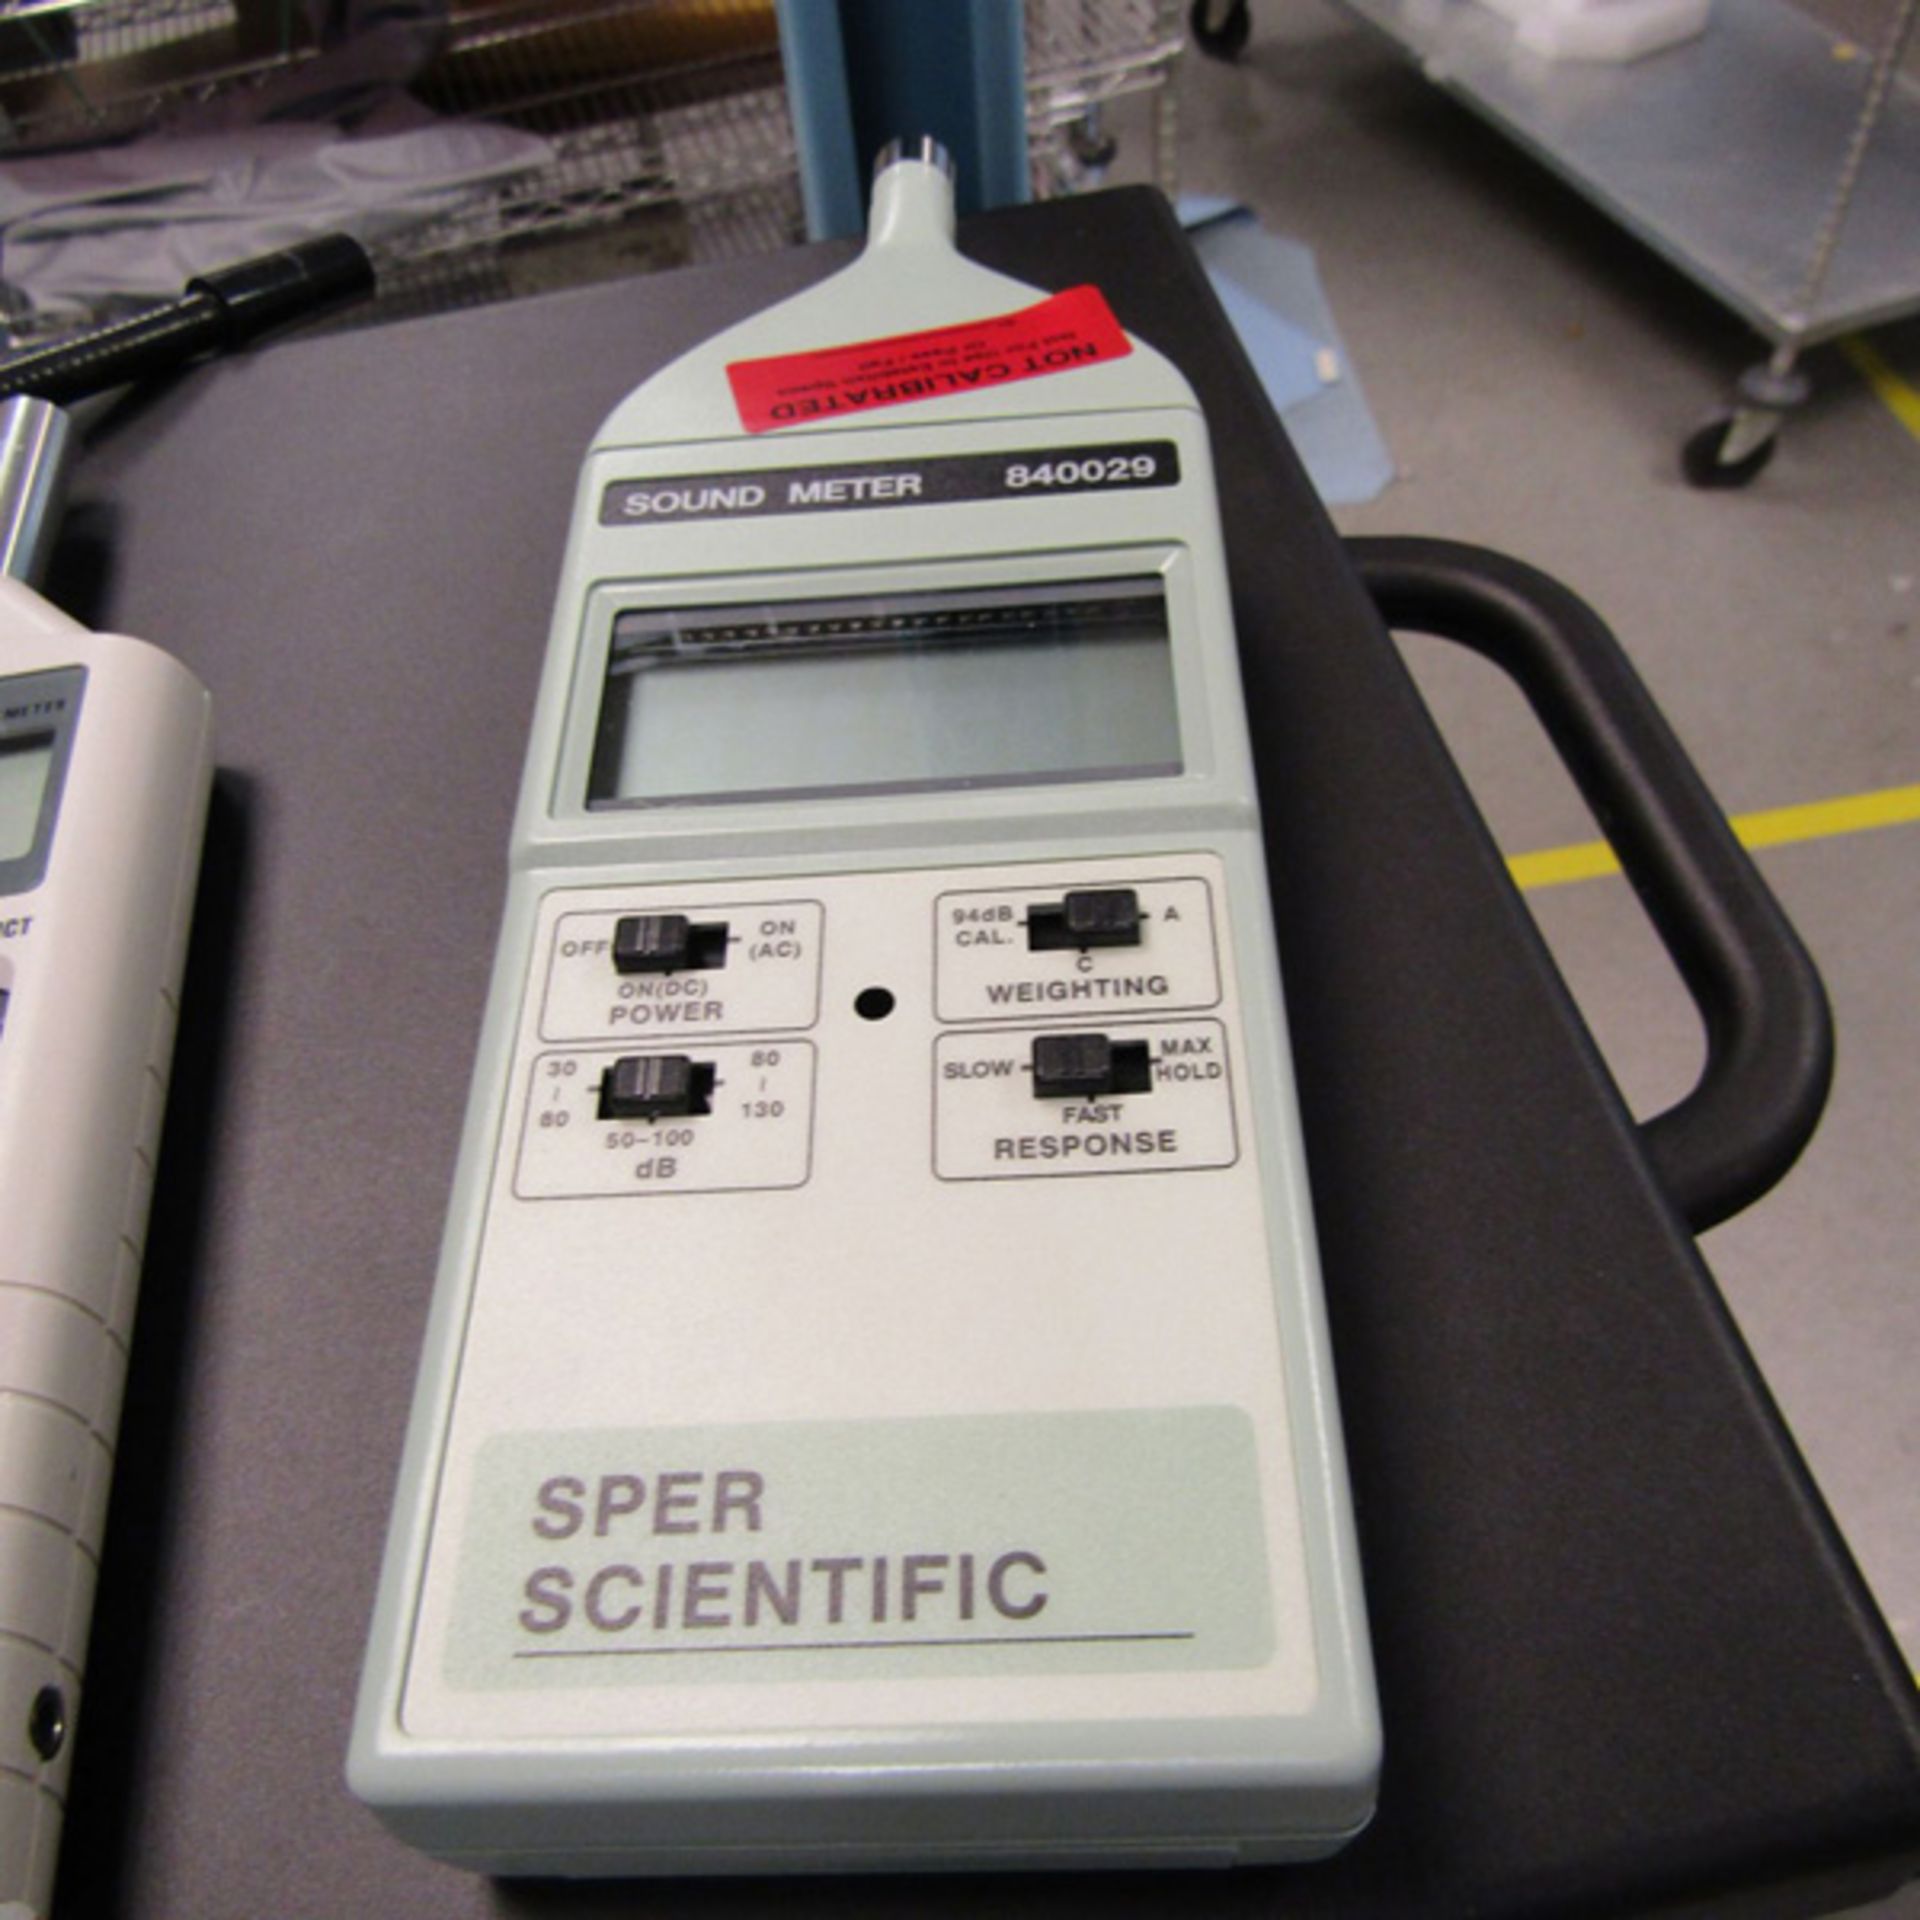 Sound Meters (1) SPER Scientific 840029, (1) Exctech 407736, (1) Steelman DPB-50 Location: Quantum - Image 2 of 3